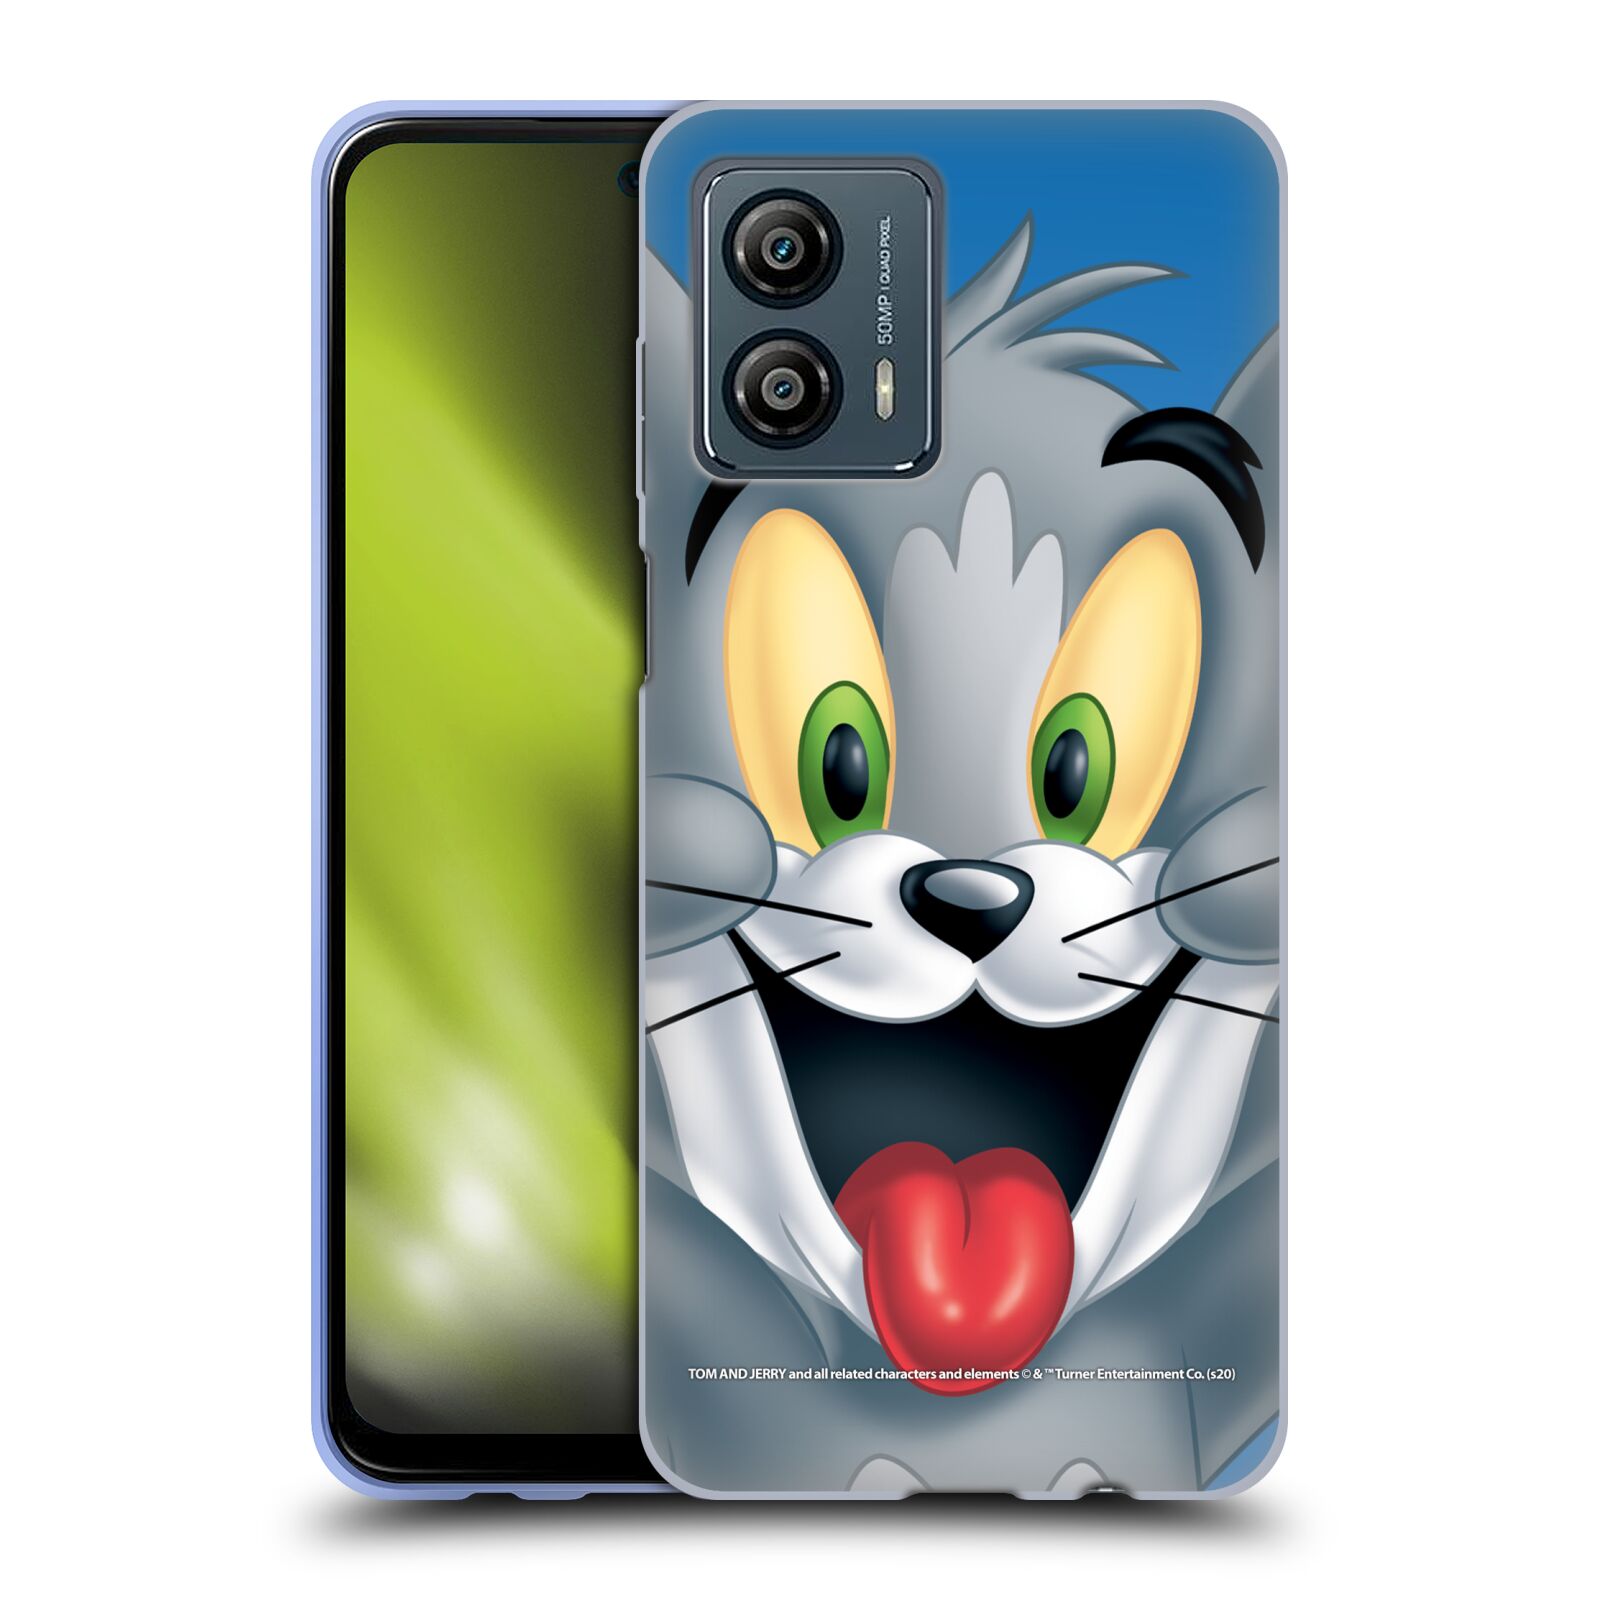 Silikonové pouzdro na mobil Motorola Moto G53 5G - Tom and Jerry - Tom (Silikonový kryt, obal, pouzdro na mobilní telefon Motorola Moto G53 5G s licencovaným motivem Tom and Jerry - Tom)